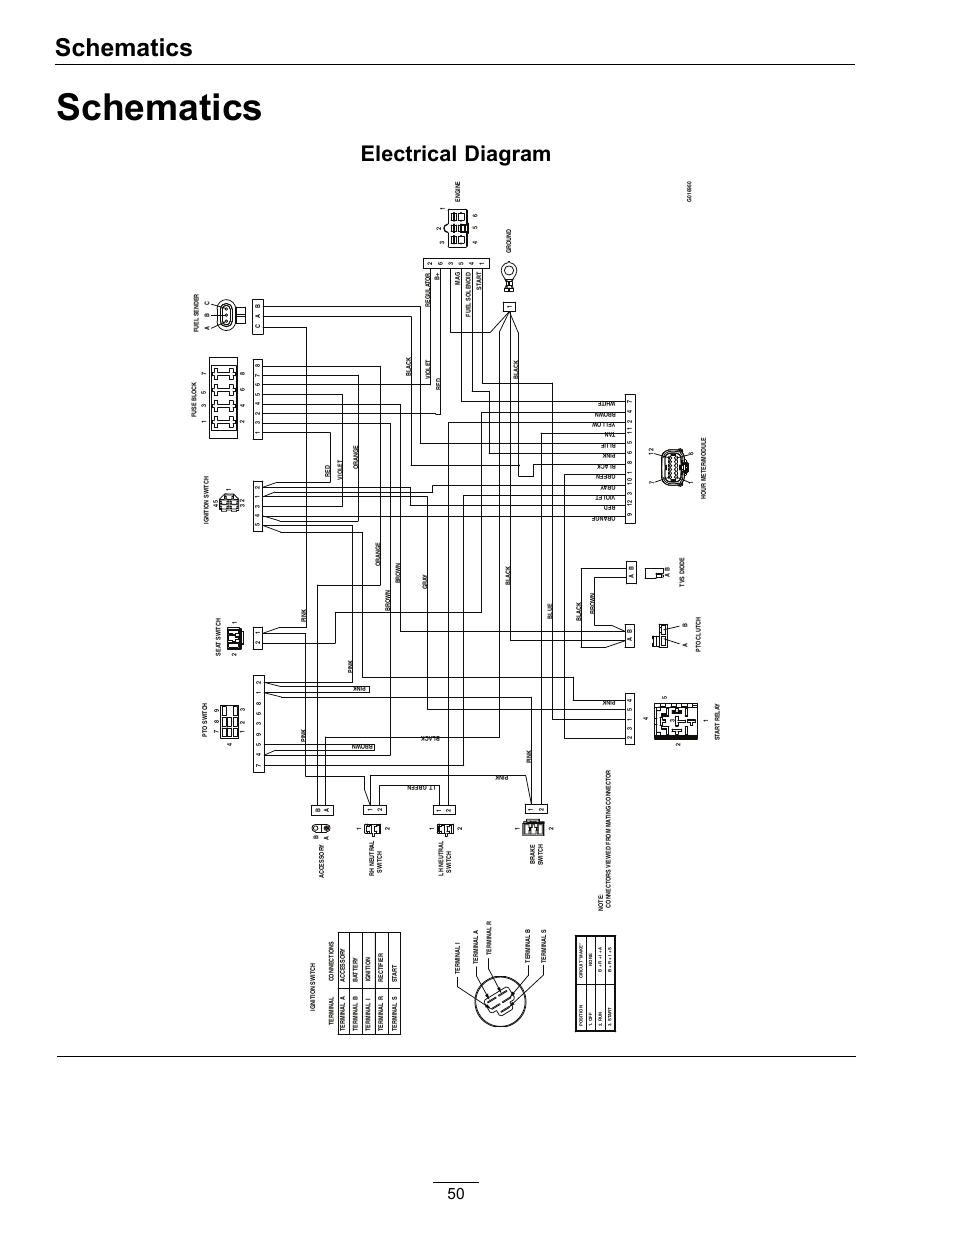 fluro wiring diagram